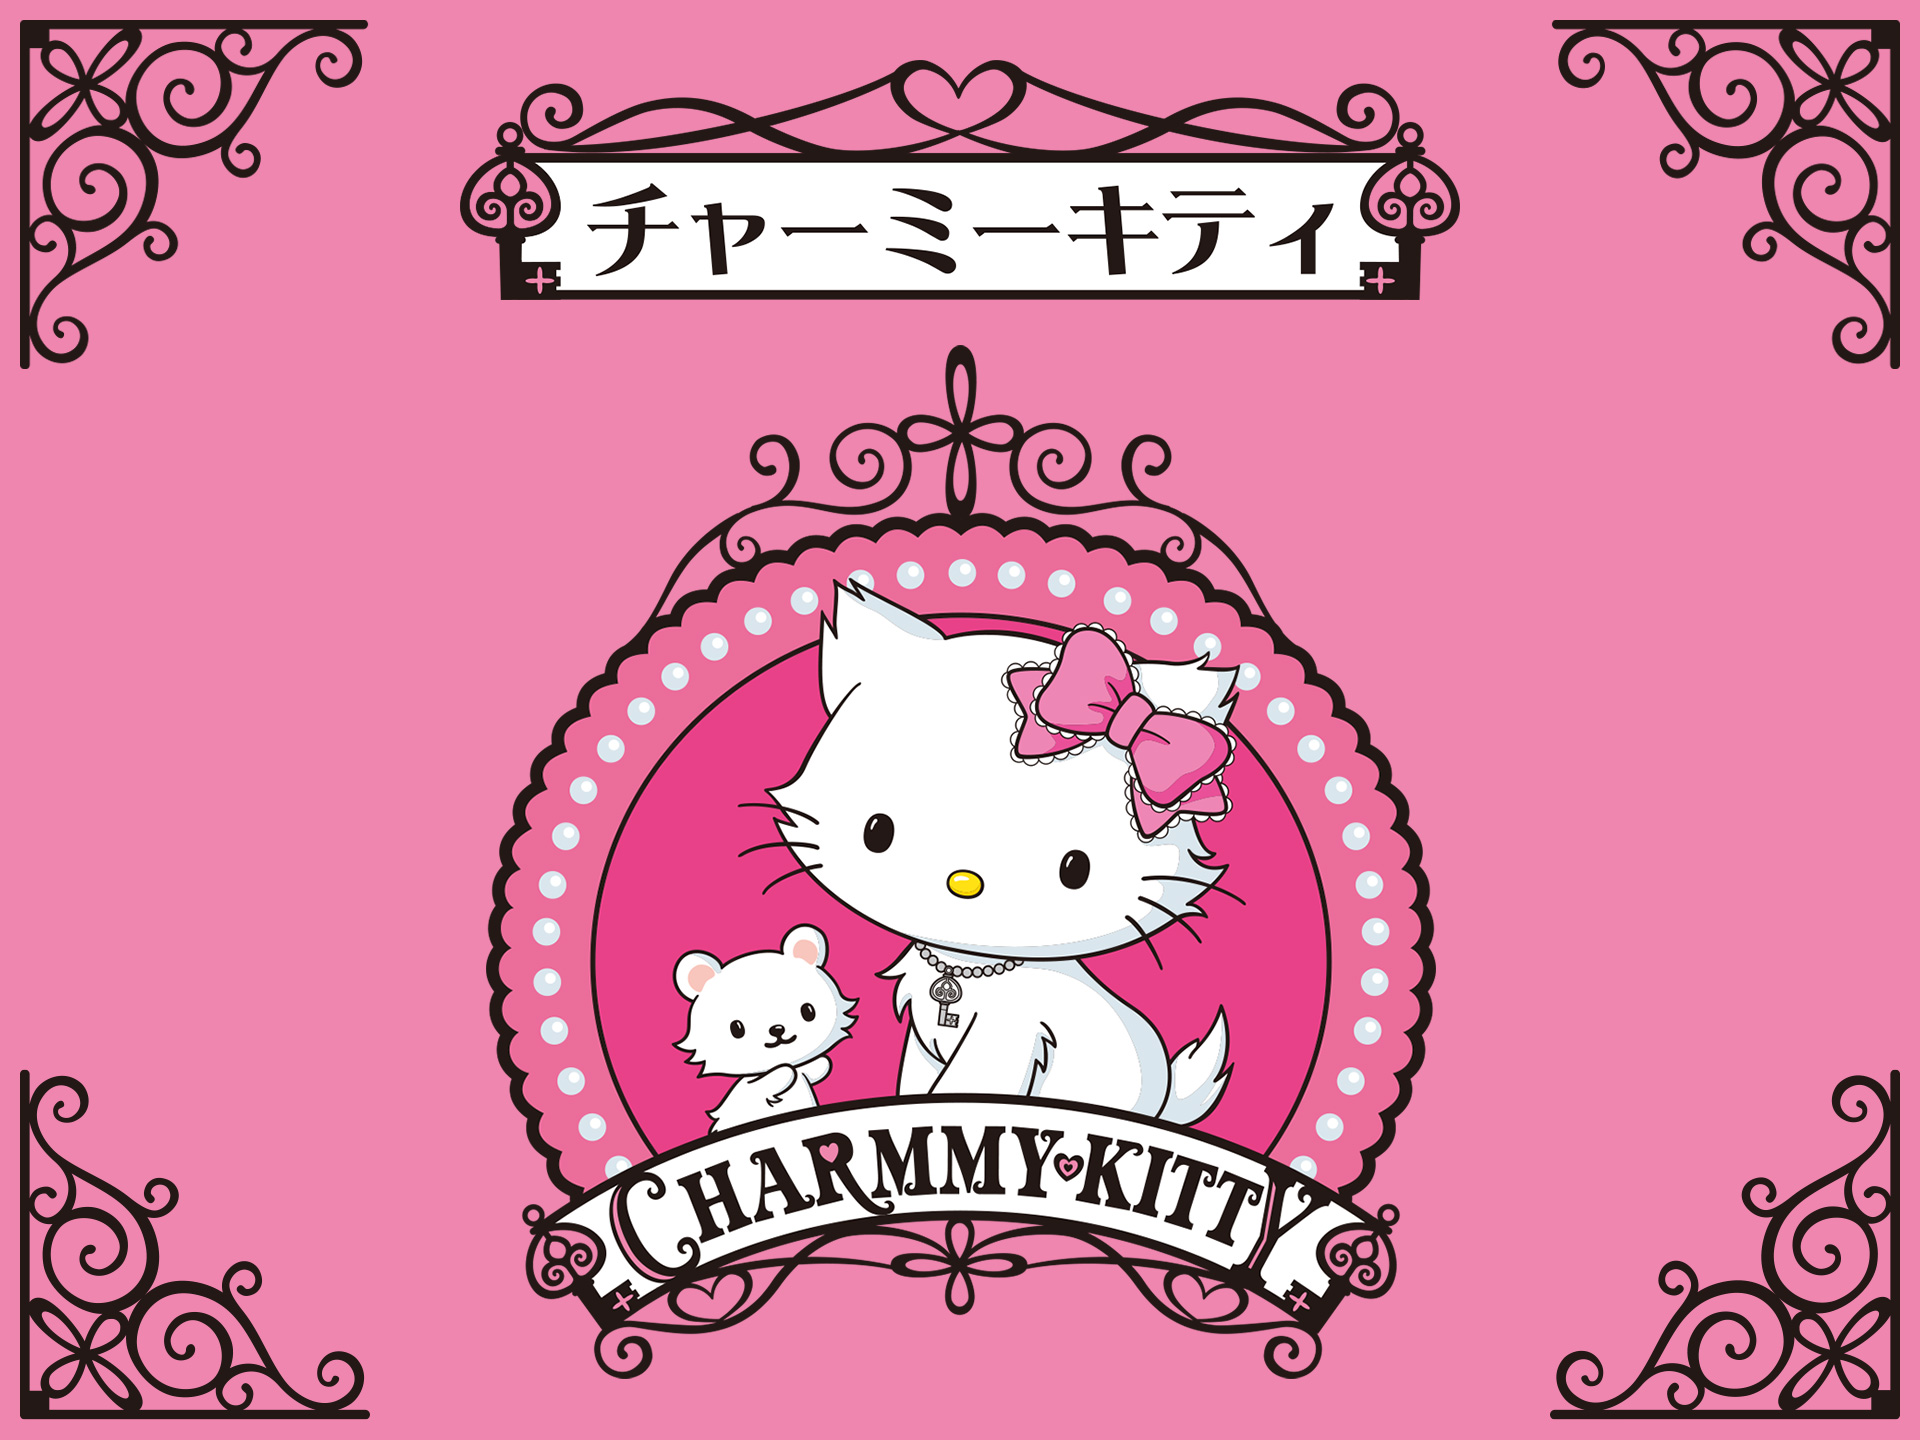 アニメ チャーミーキティ Vol 1 の動画 初月無料 動画配信サービスのビデオマーケット